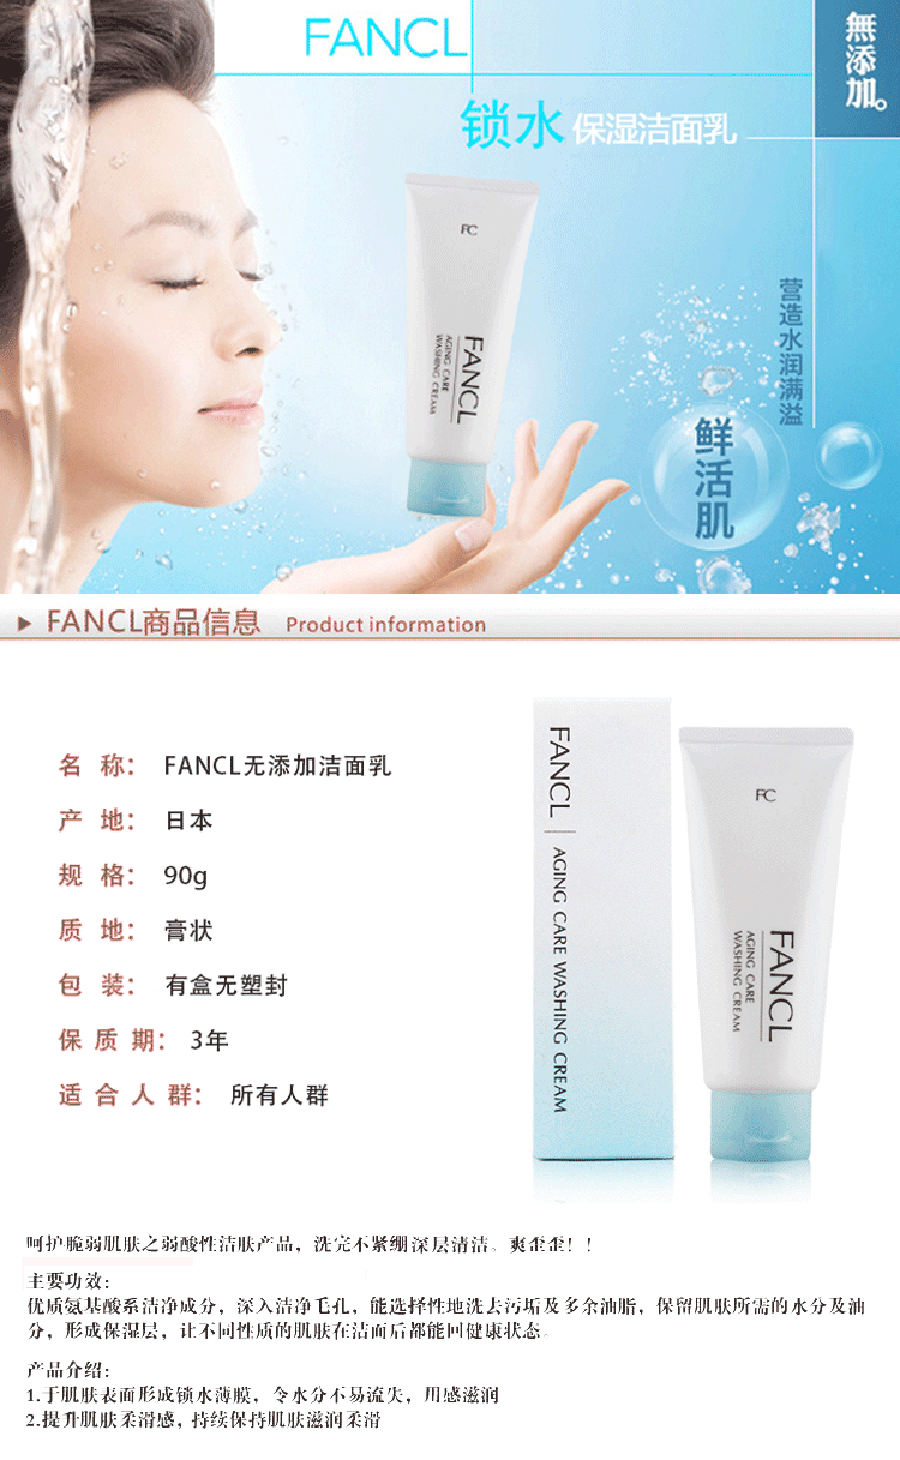 【日本直郵 】FANCL無添加芳珂 蜂王精華去角質軟膜 (用於洗面和化妝水之間)40g